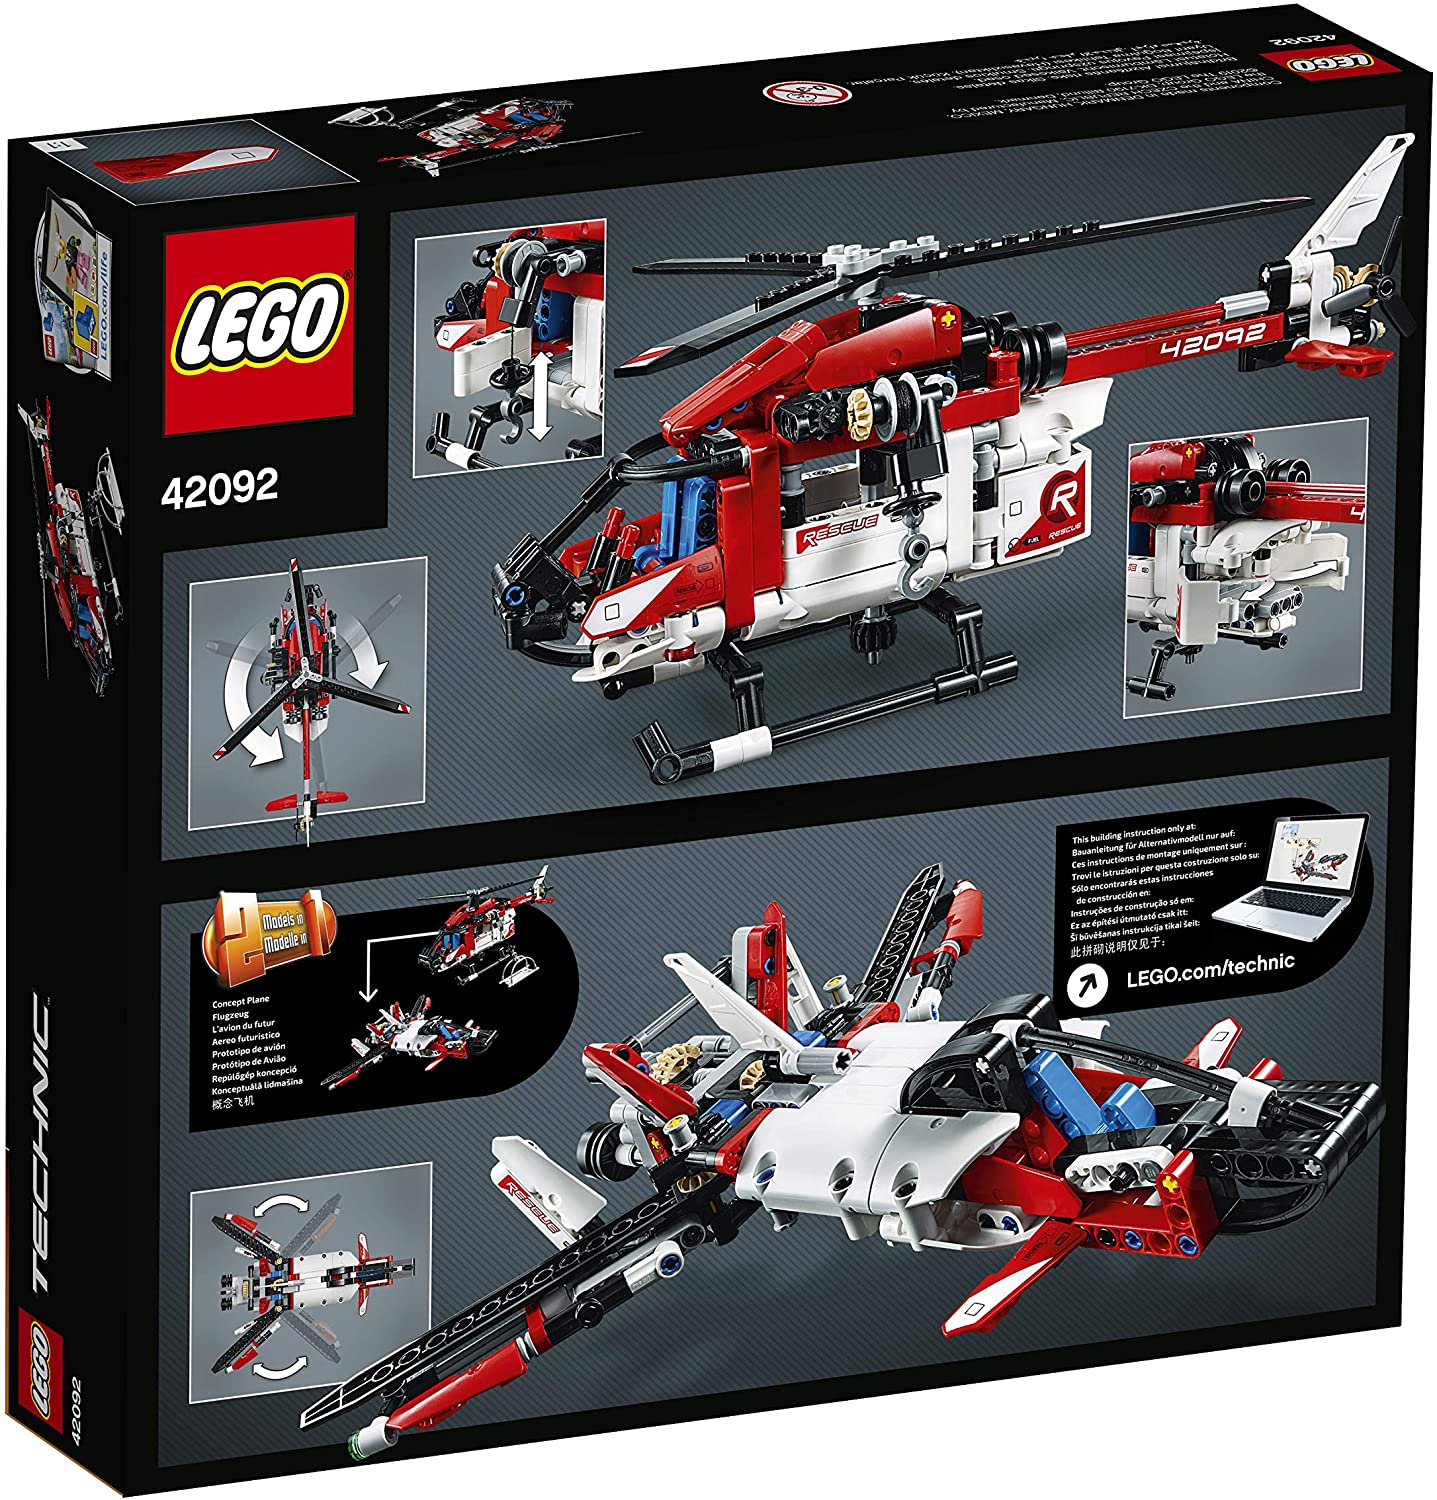 LEGO 42092 Technic Rettungshubschrauber Bauset, 2-in-1 Flugzeug Spielzeug 